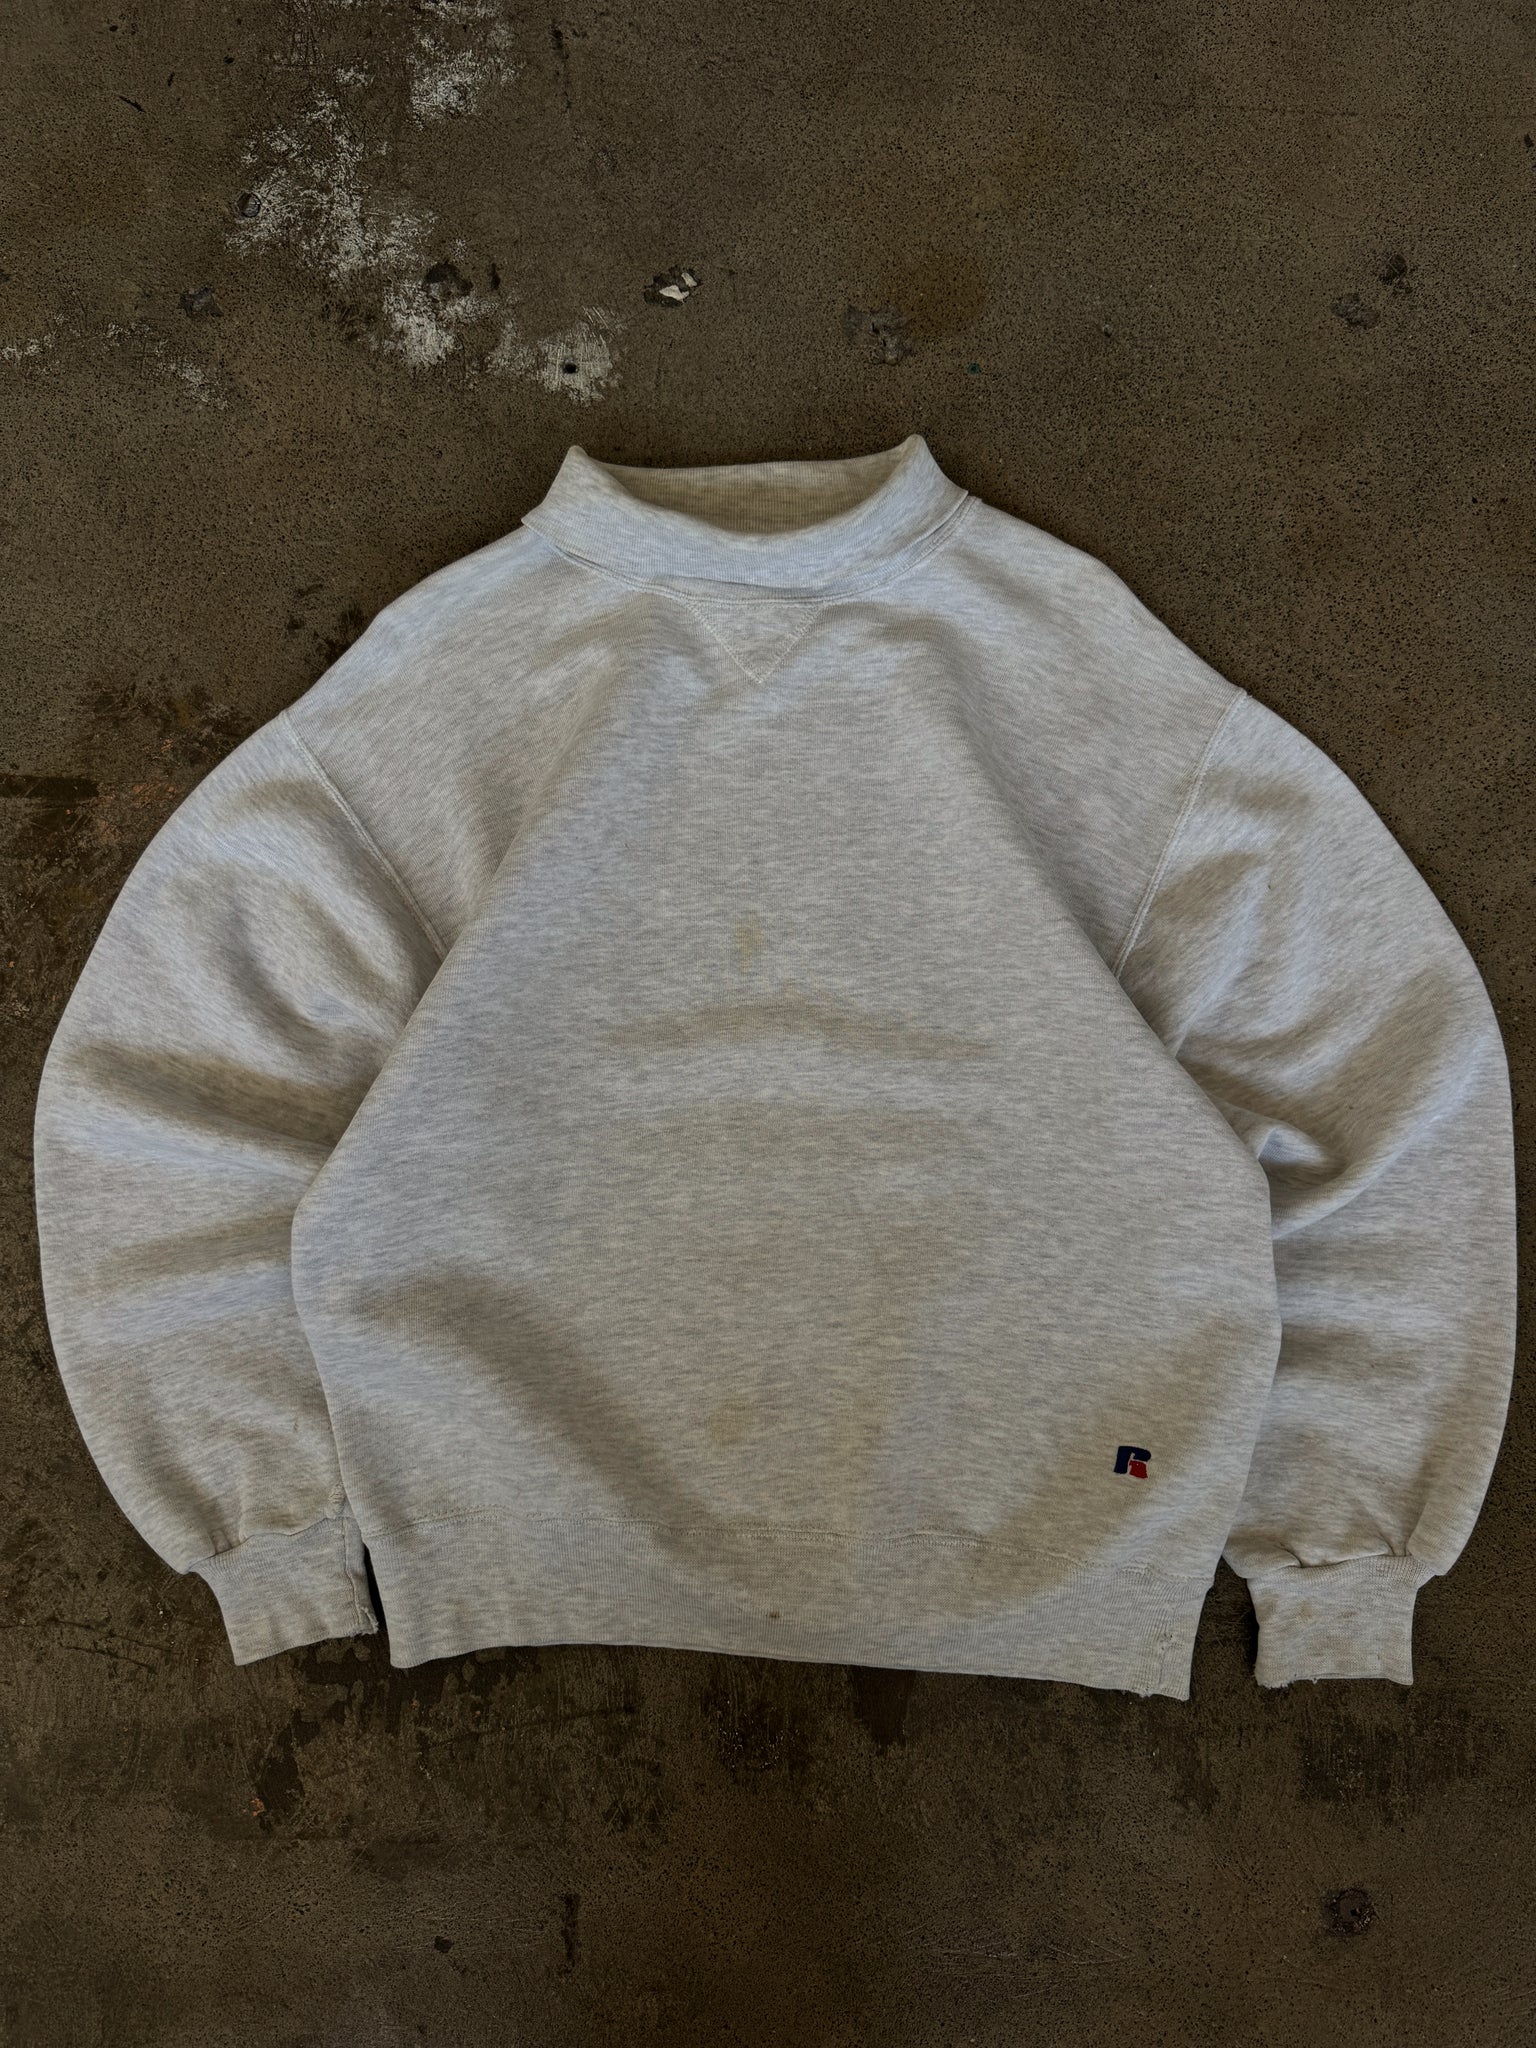 Vintage Blank Russell Athletics Turtleneck Sweatshirt (M)